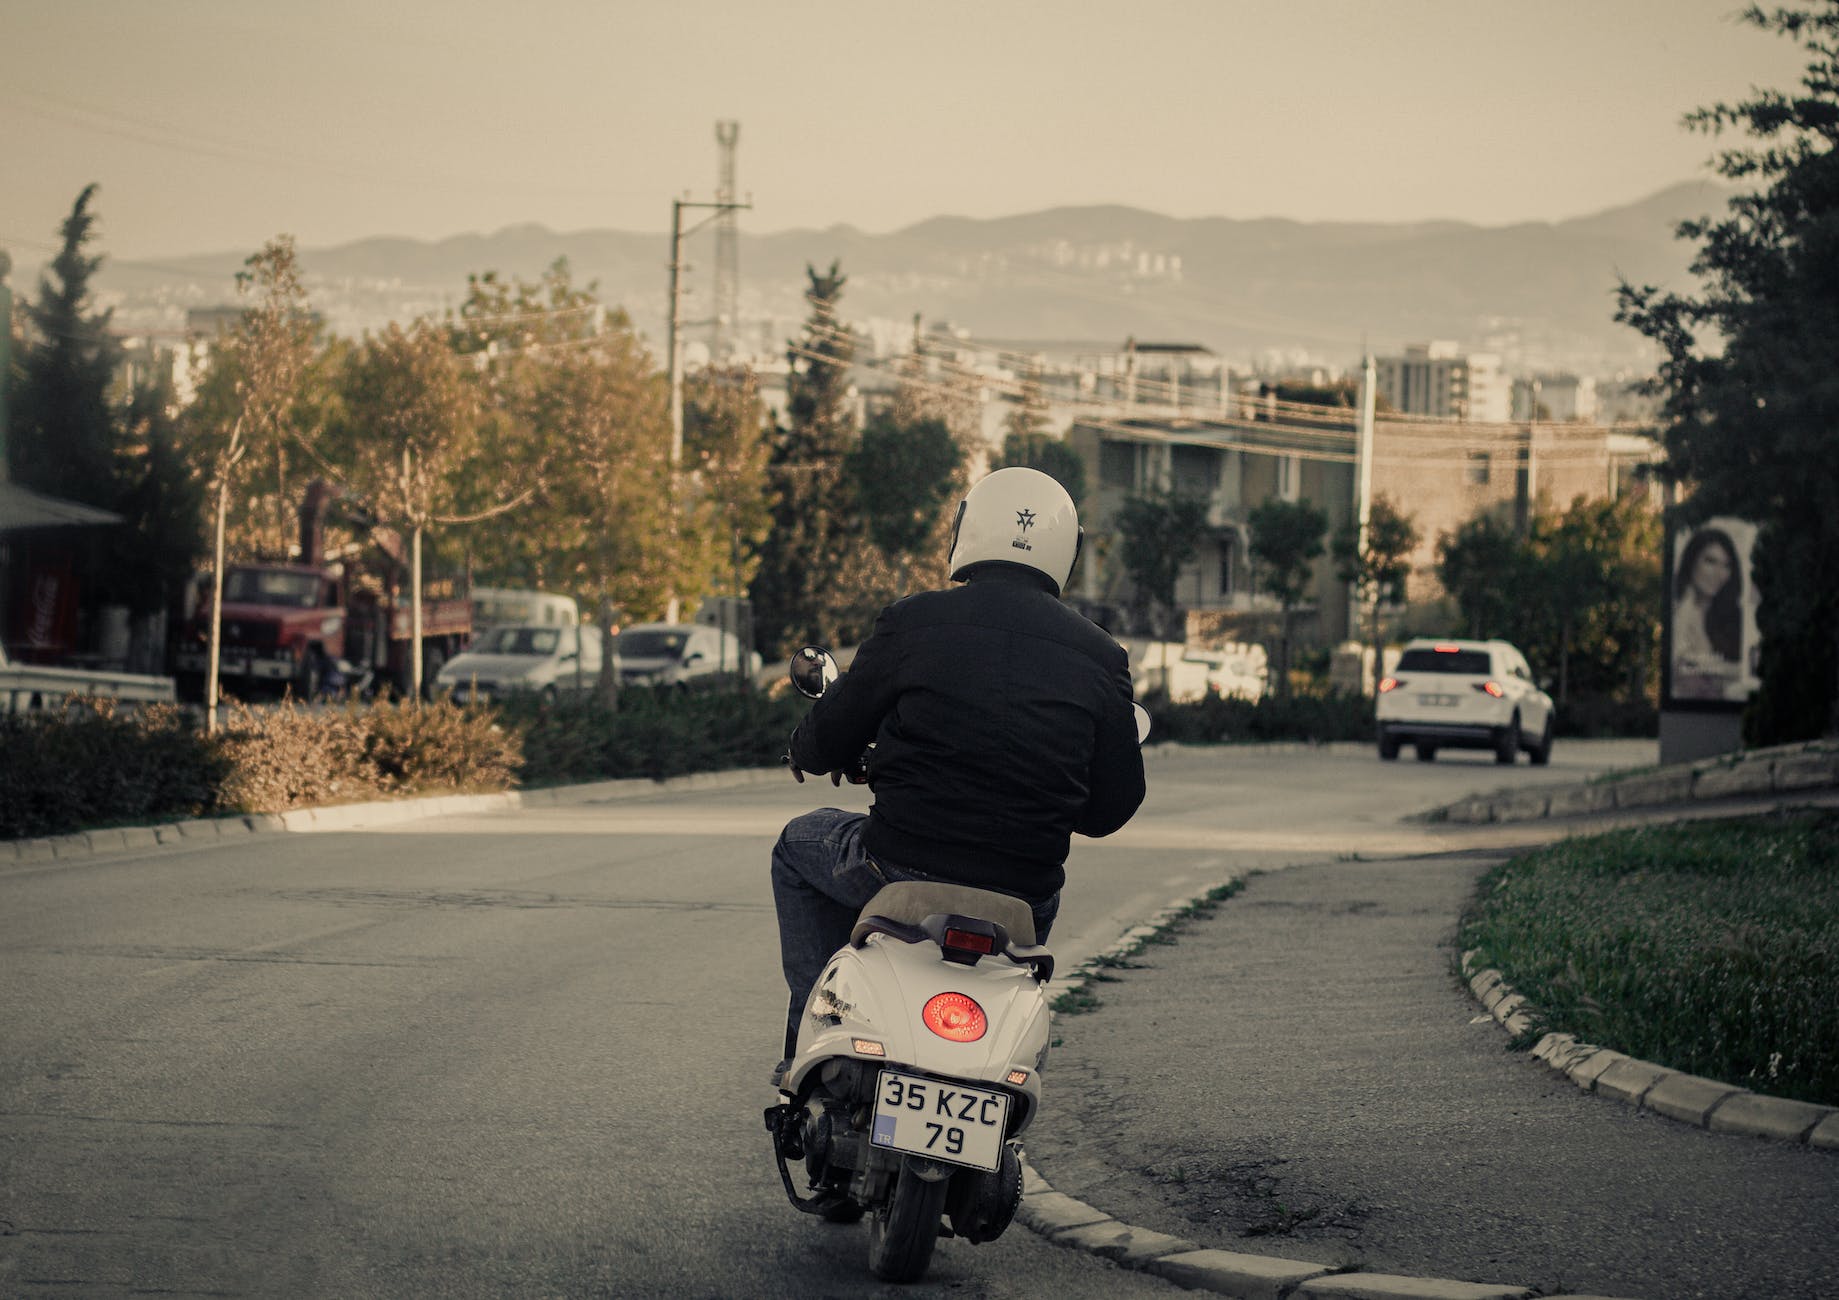 La loi moto : les nouvelles règles pour assurer la sécurité des motocyclistes sur les routes